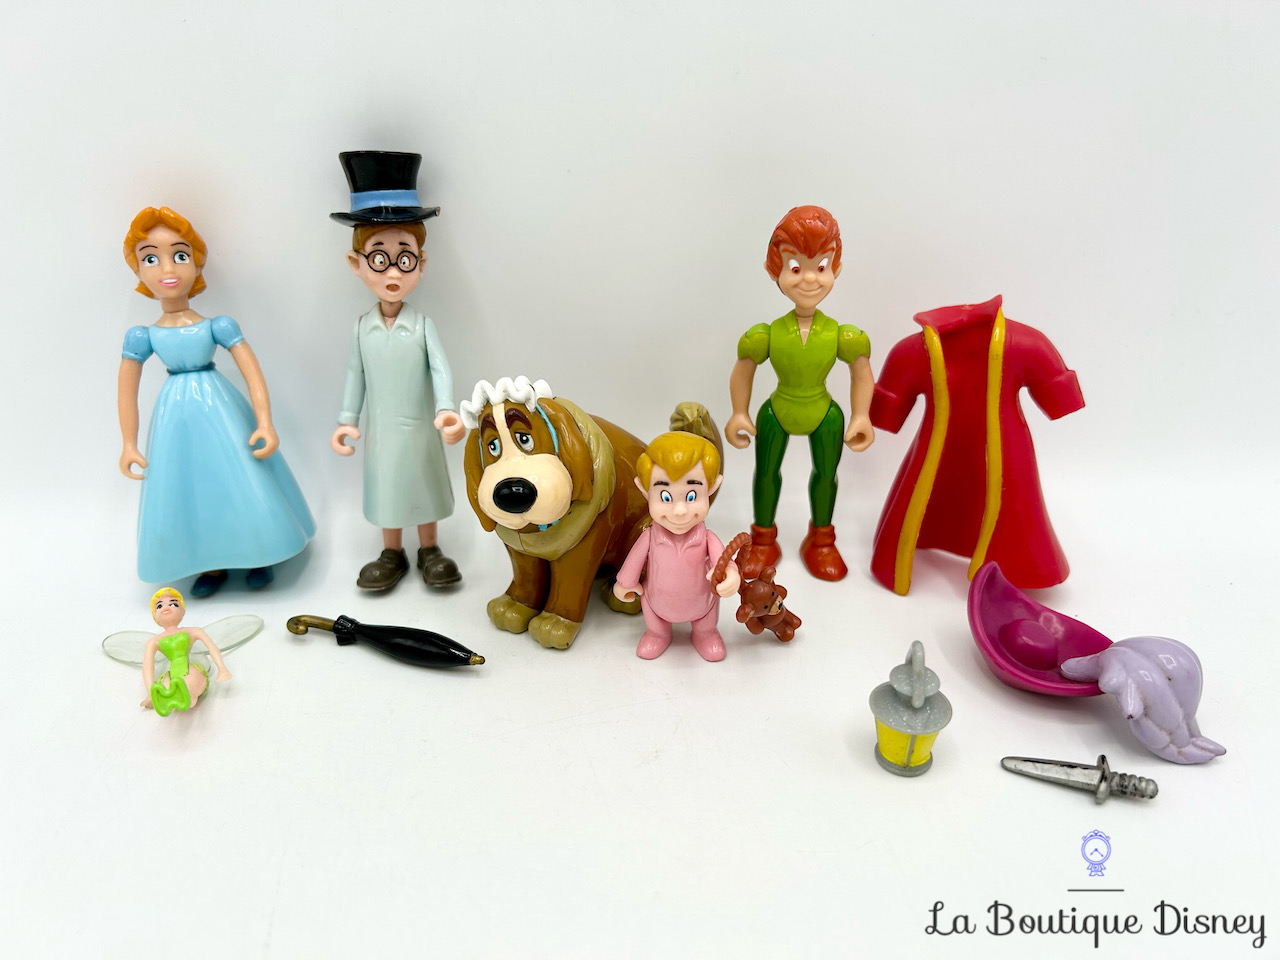 figurines-famille-darling-wendy-jean-michel-nana-peter-pan-disney-heroes-famosa-vintage-0